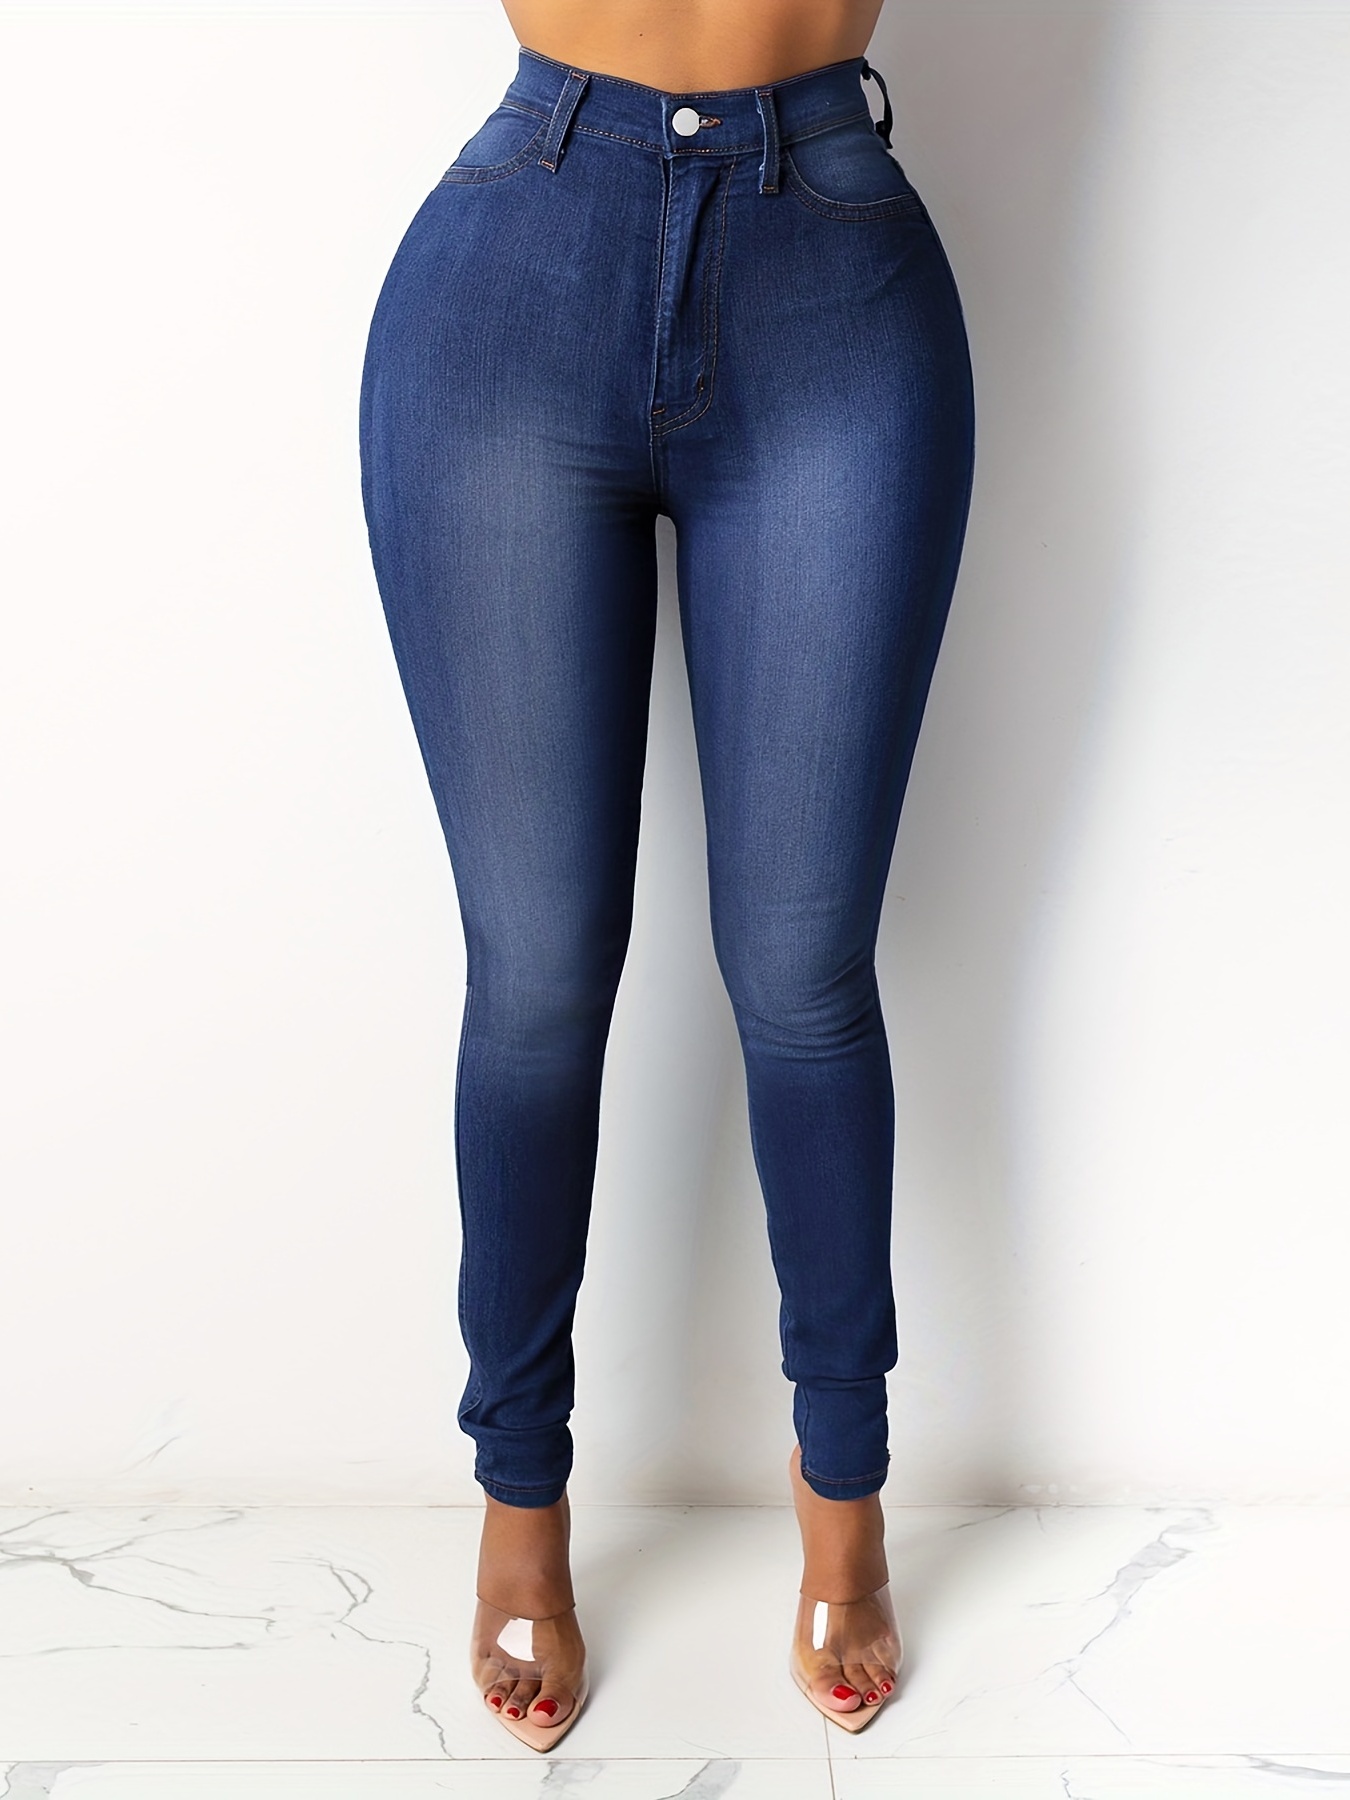 Jeans tiro súper alto para mujer